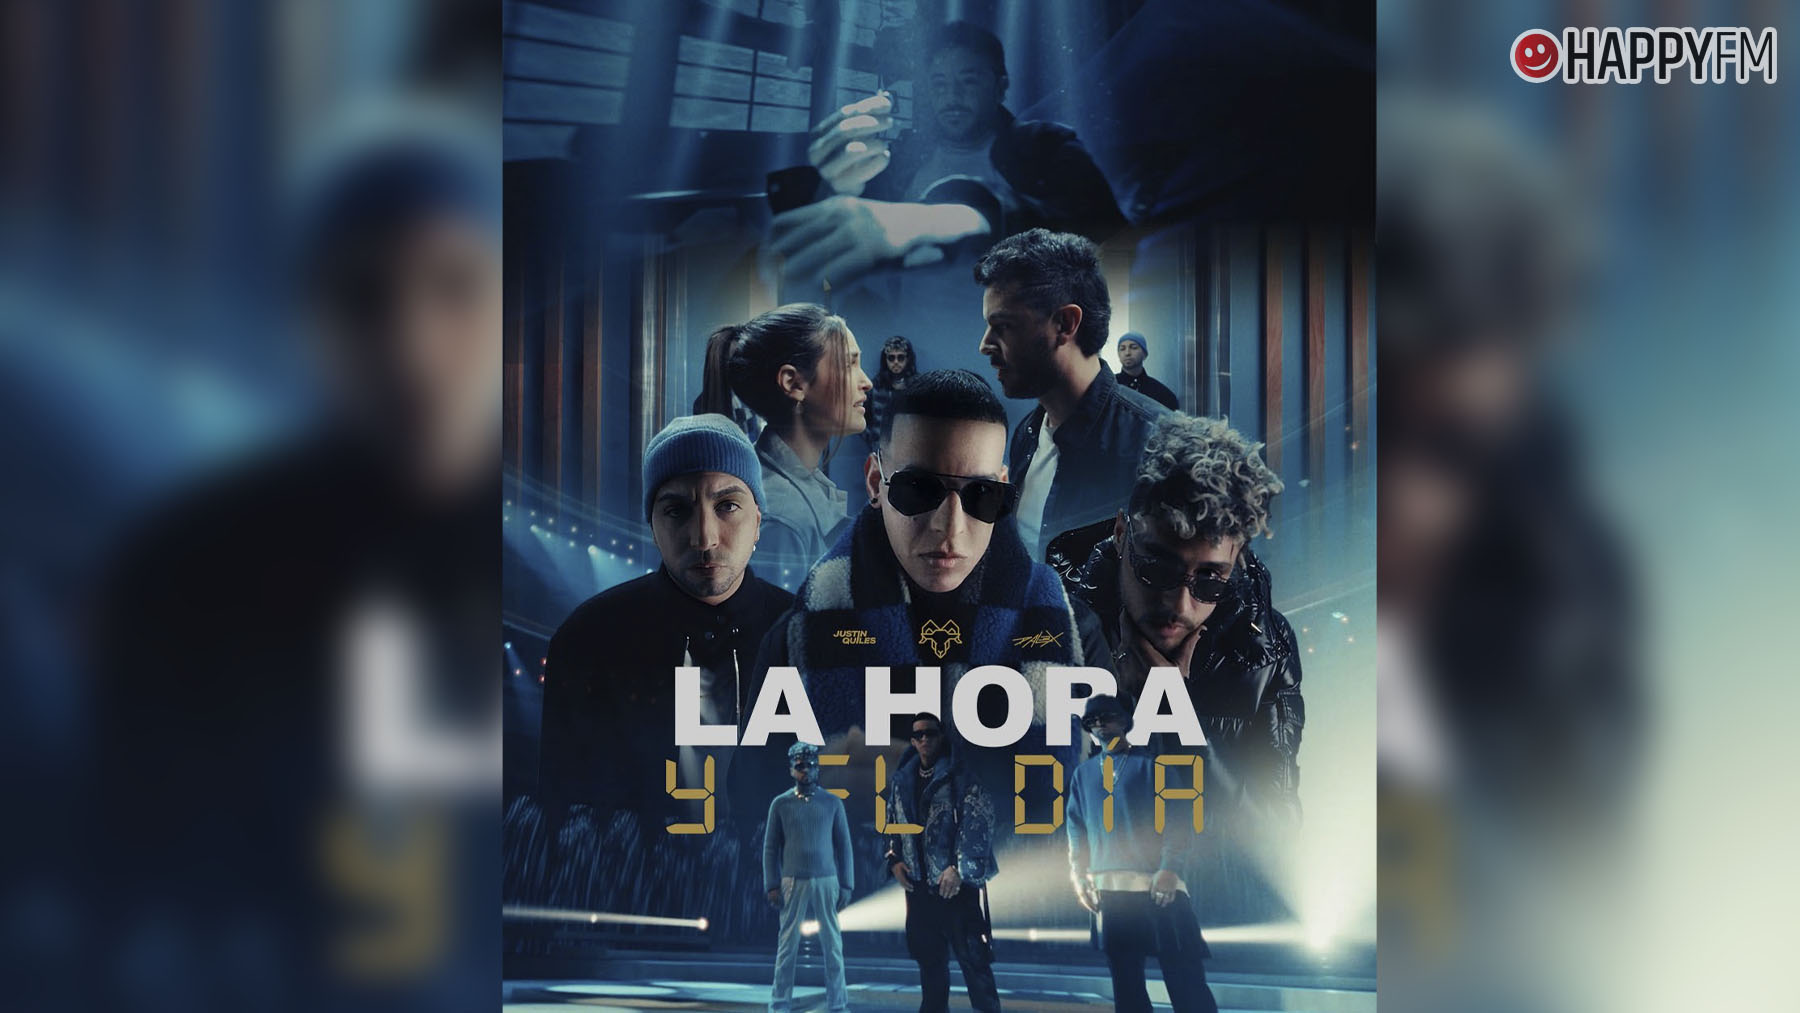 resistencia cuscús Fraternidad La hora y el día', de Daddy Yankee, Justin Quiles y Dalex: letra y vídeo